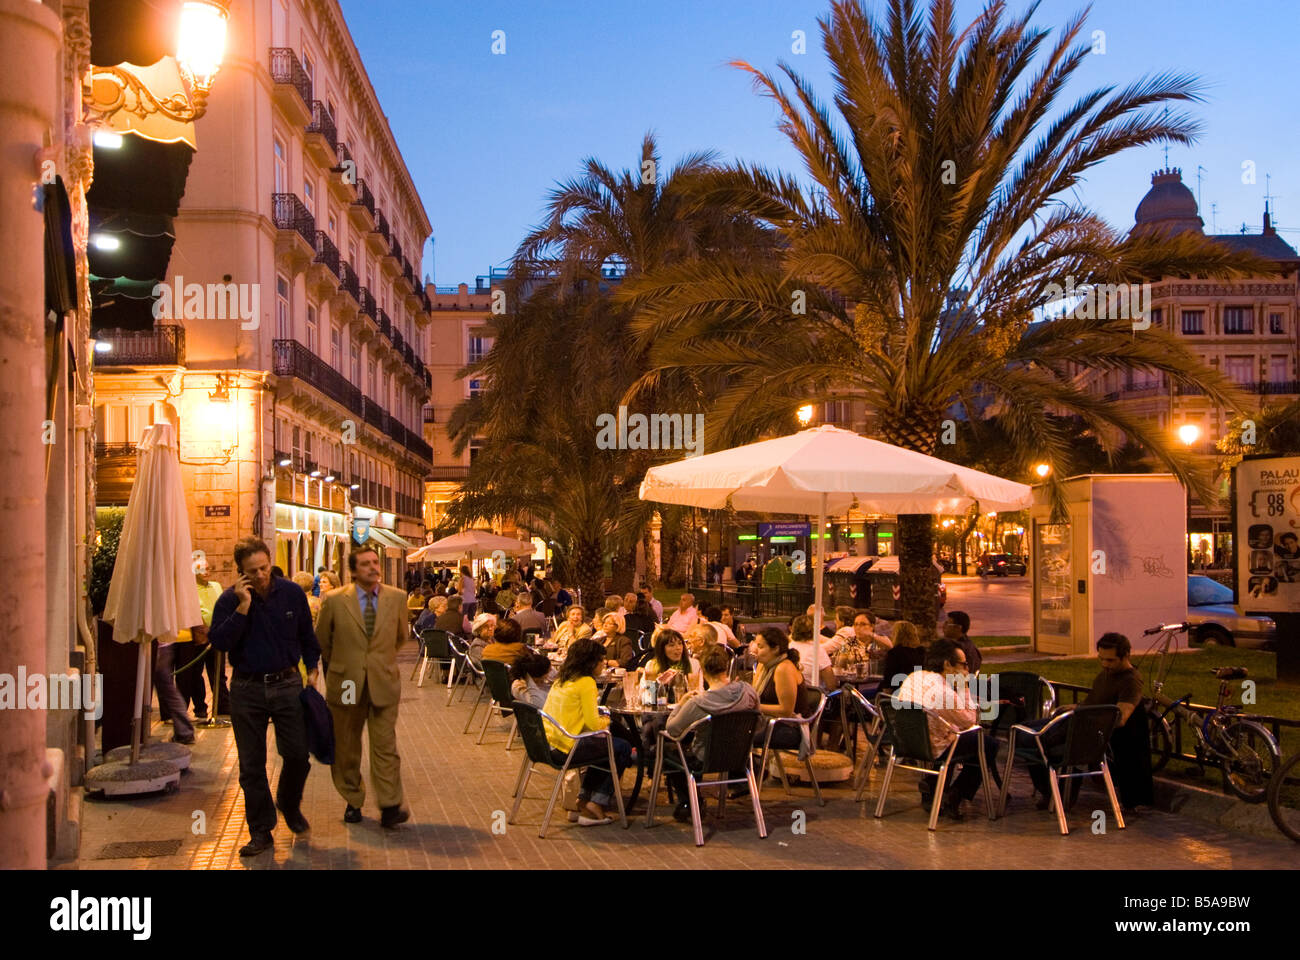 Les gens assis à l'extérieur d'un bar très fréquenté sur la place de la Reine dans le quartier historique de El Carmen centre ville de Valence Espagne Banque D'Images